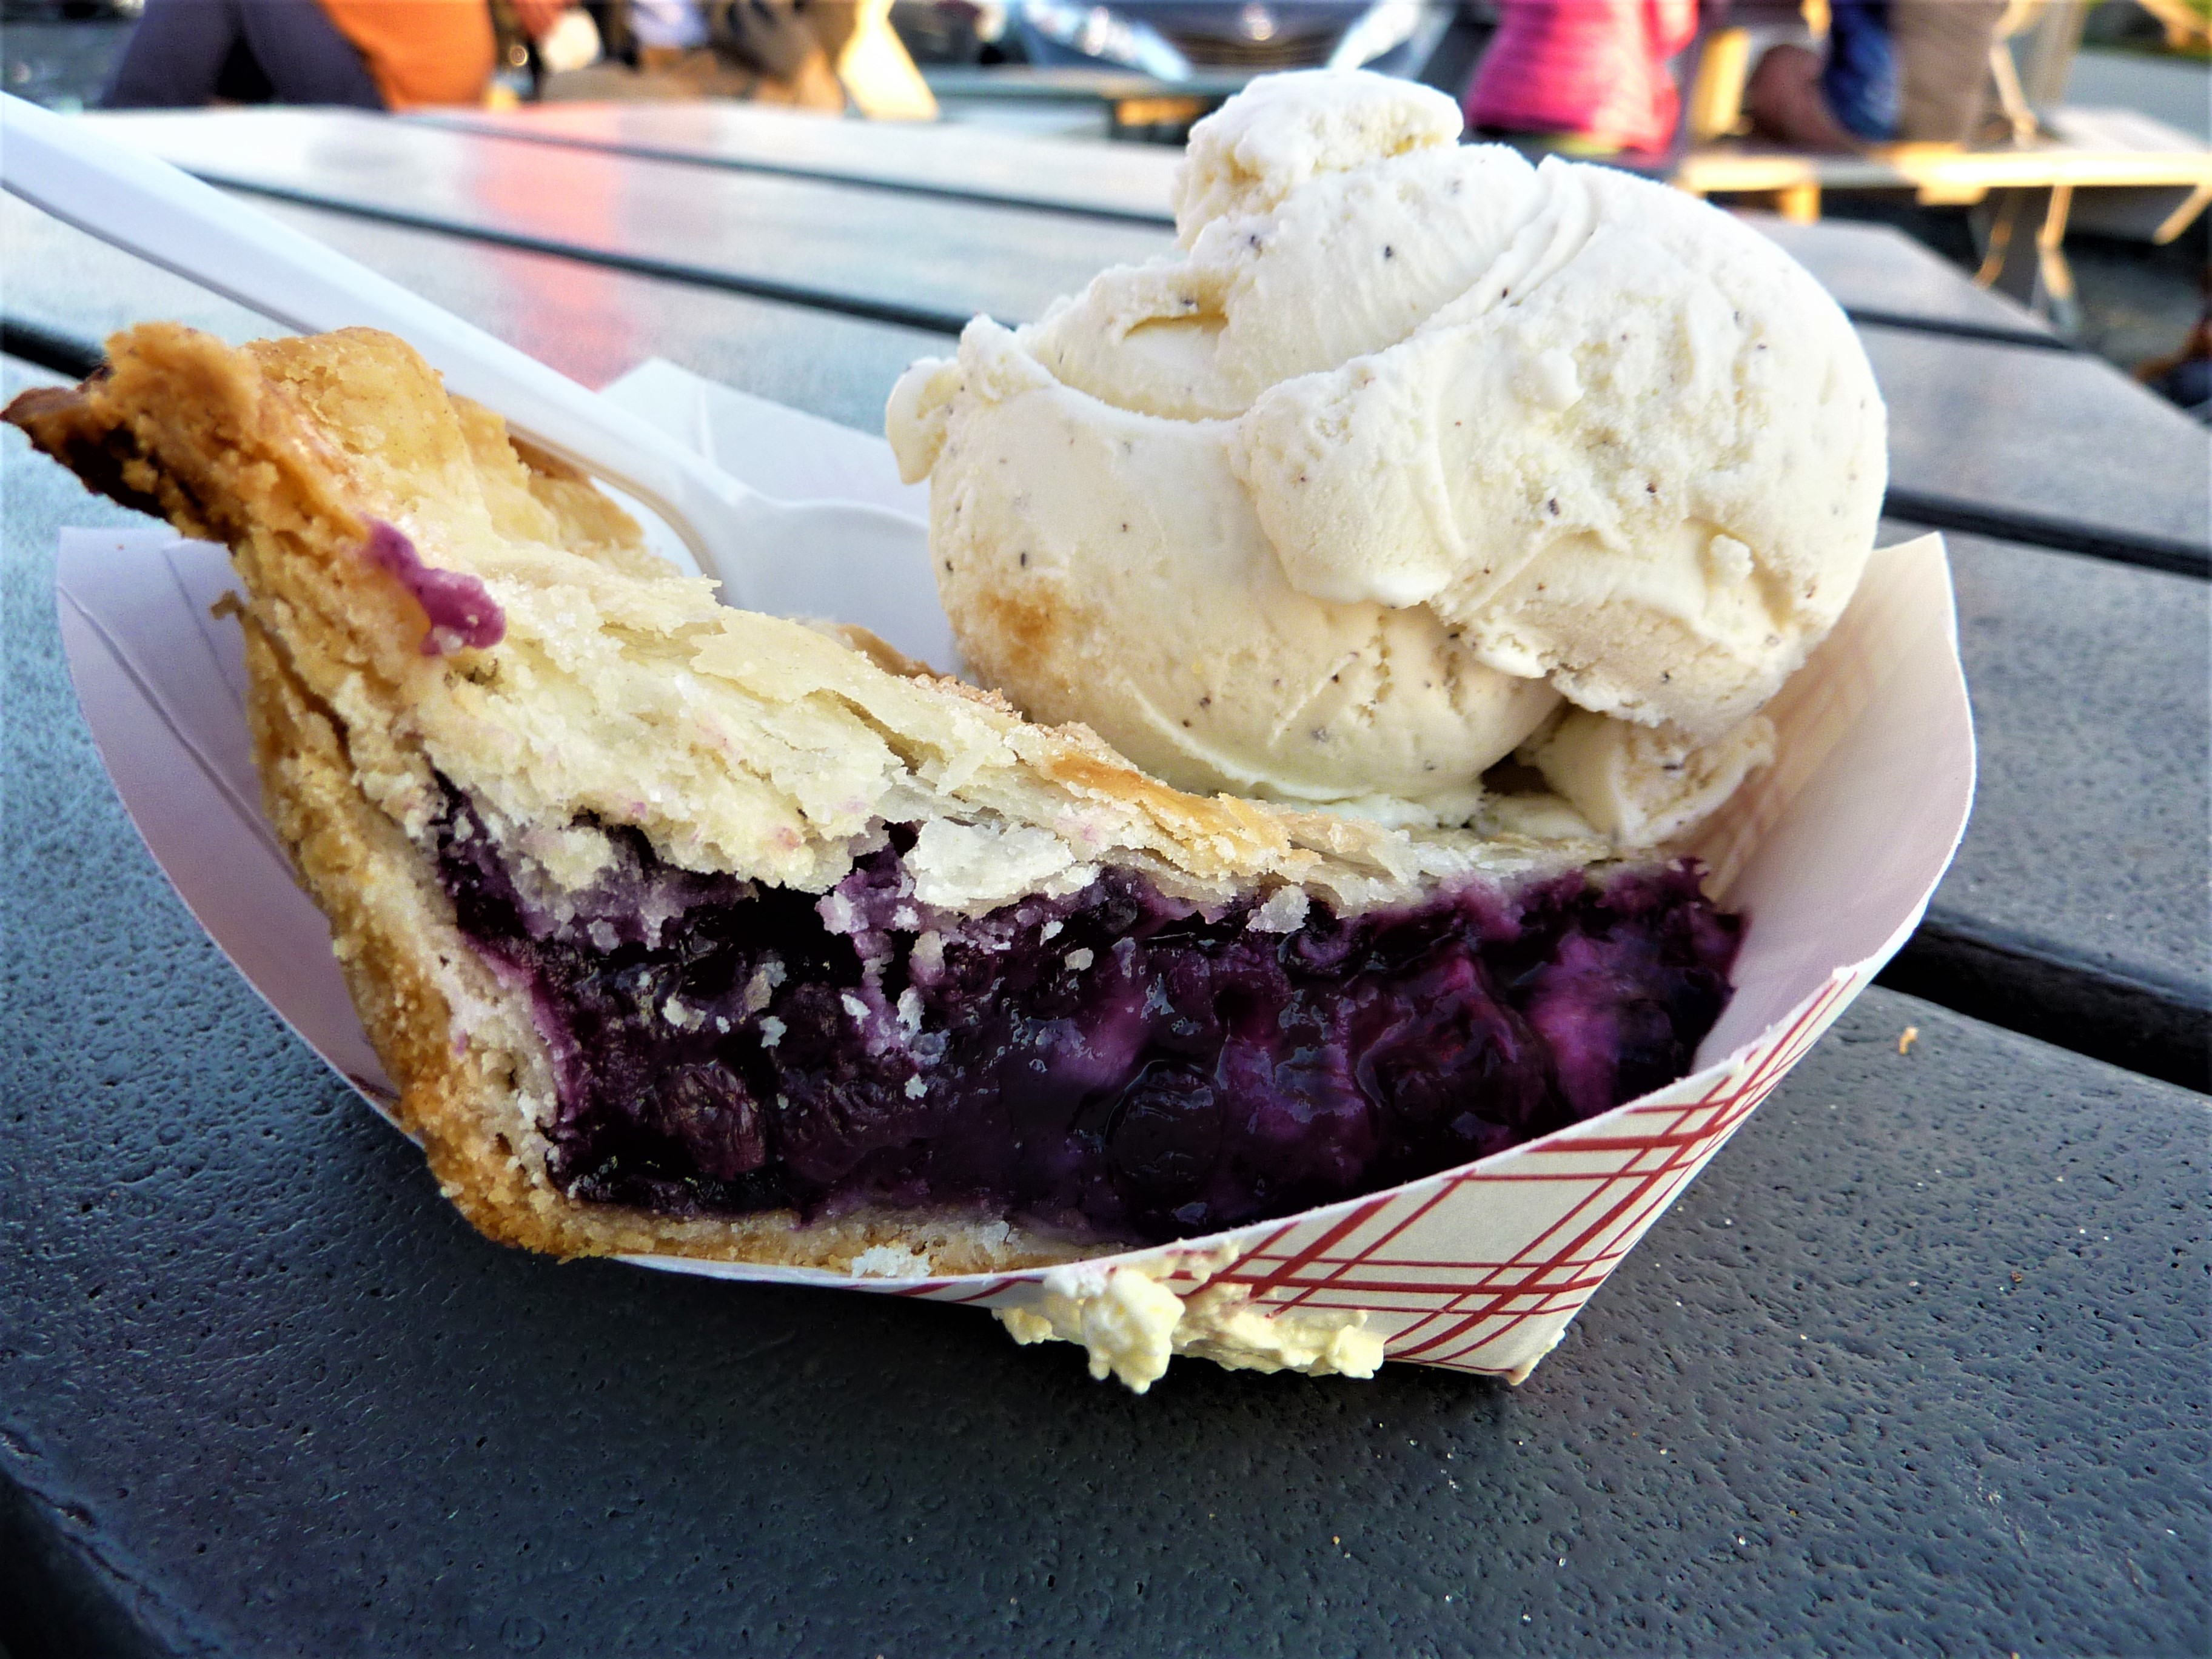 Wild Maine blueberry pie and ice cream.